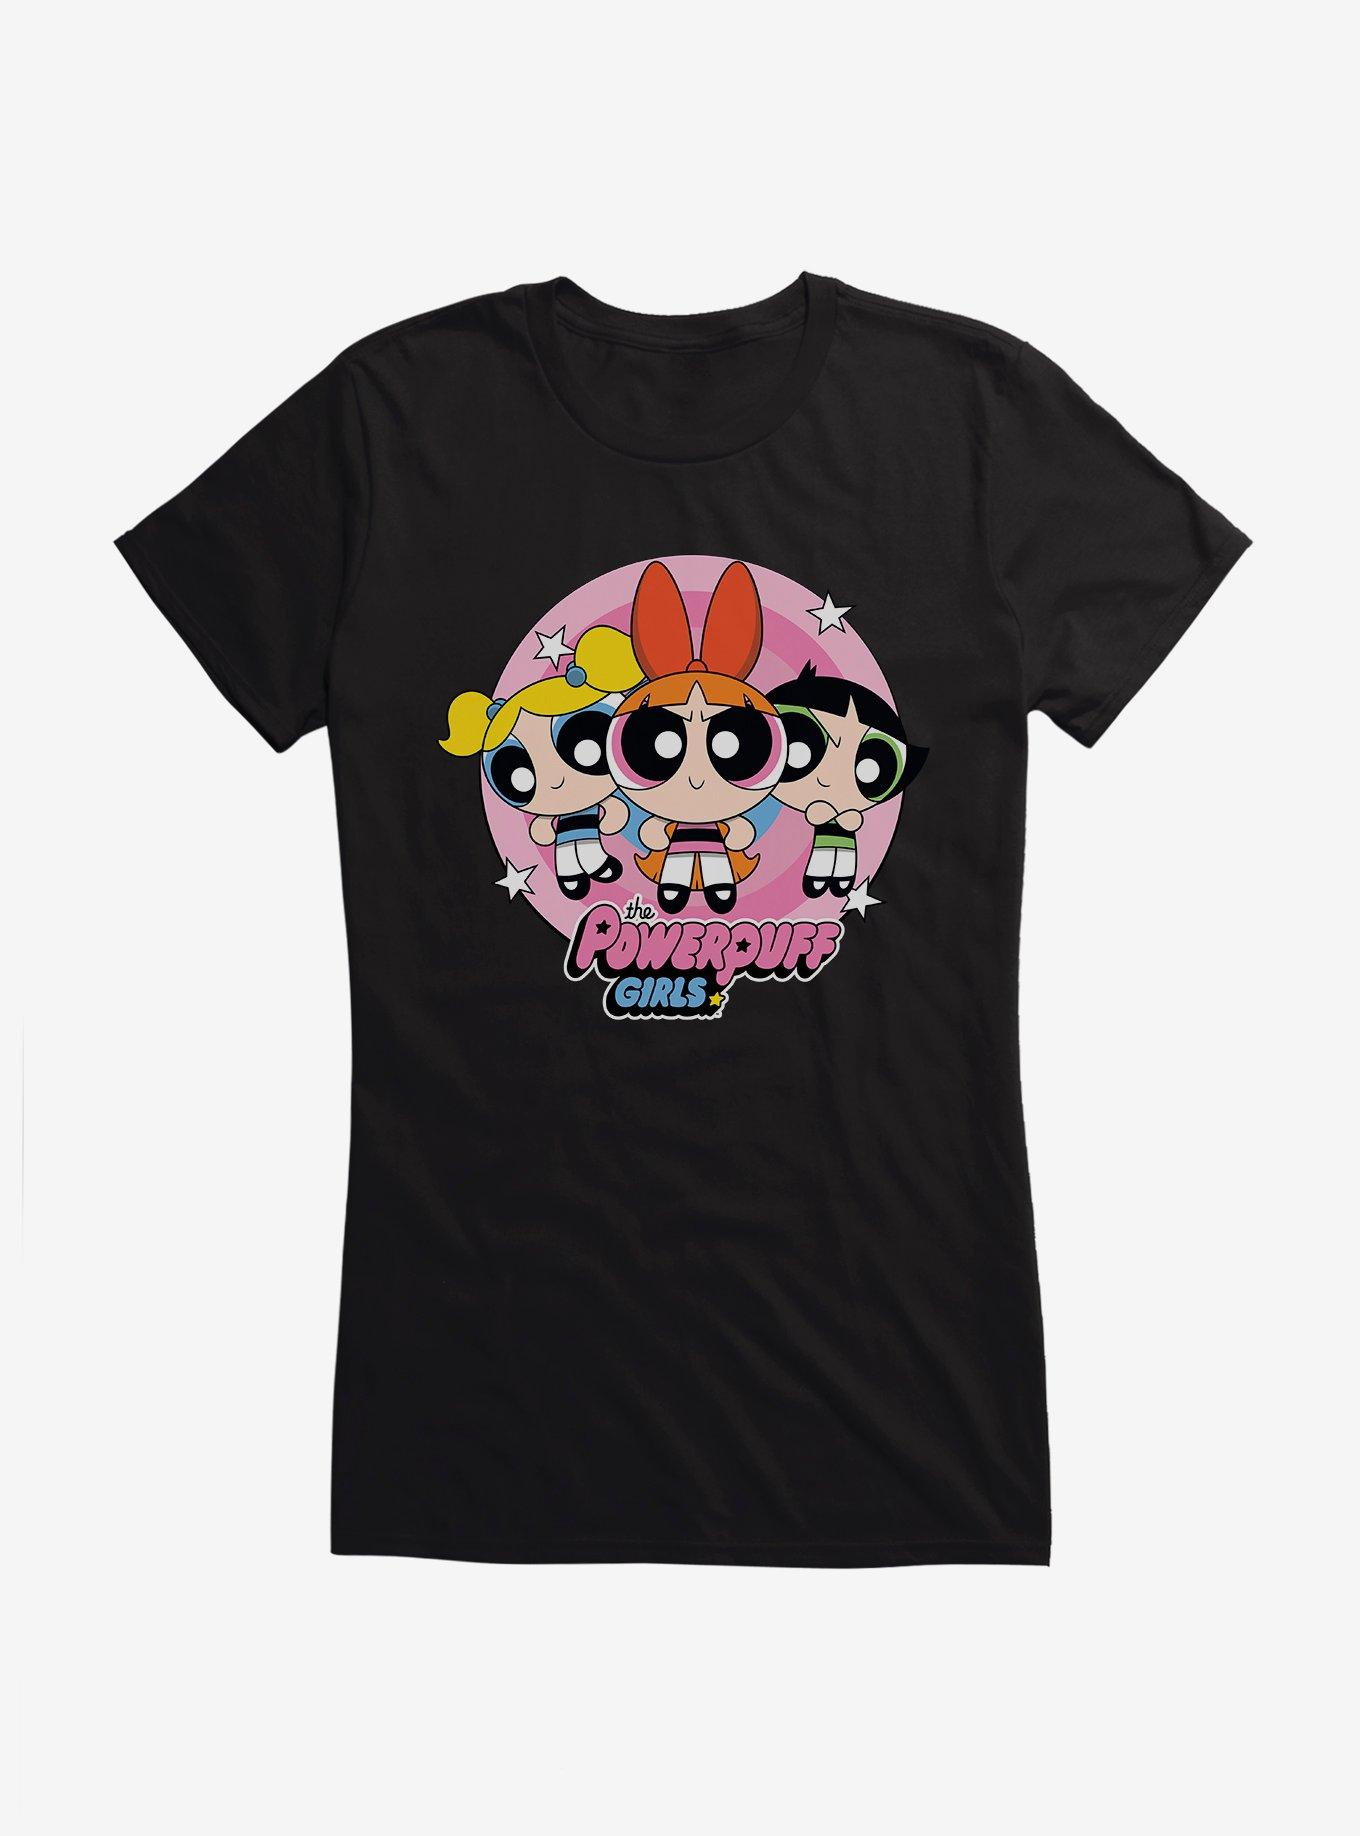 Powerpuff Girls Heroine Stance Girls T-Shirt | Hot Topic